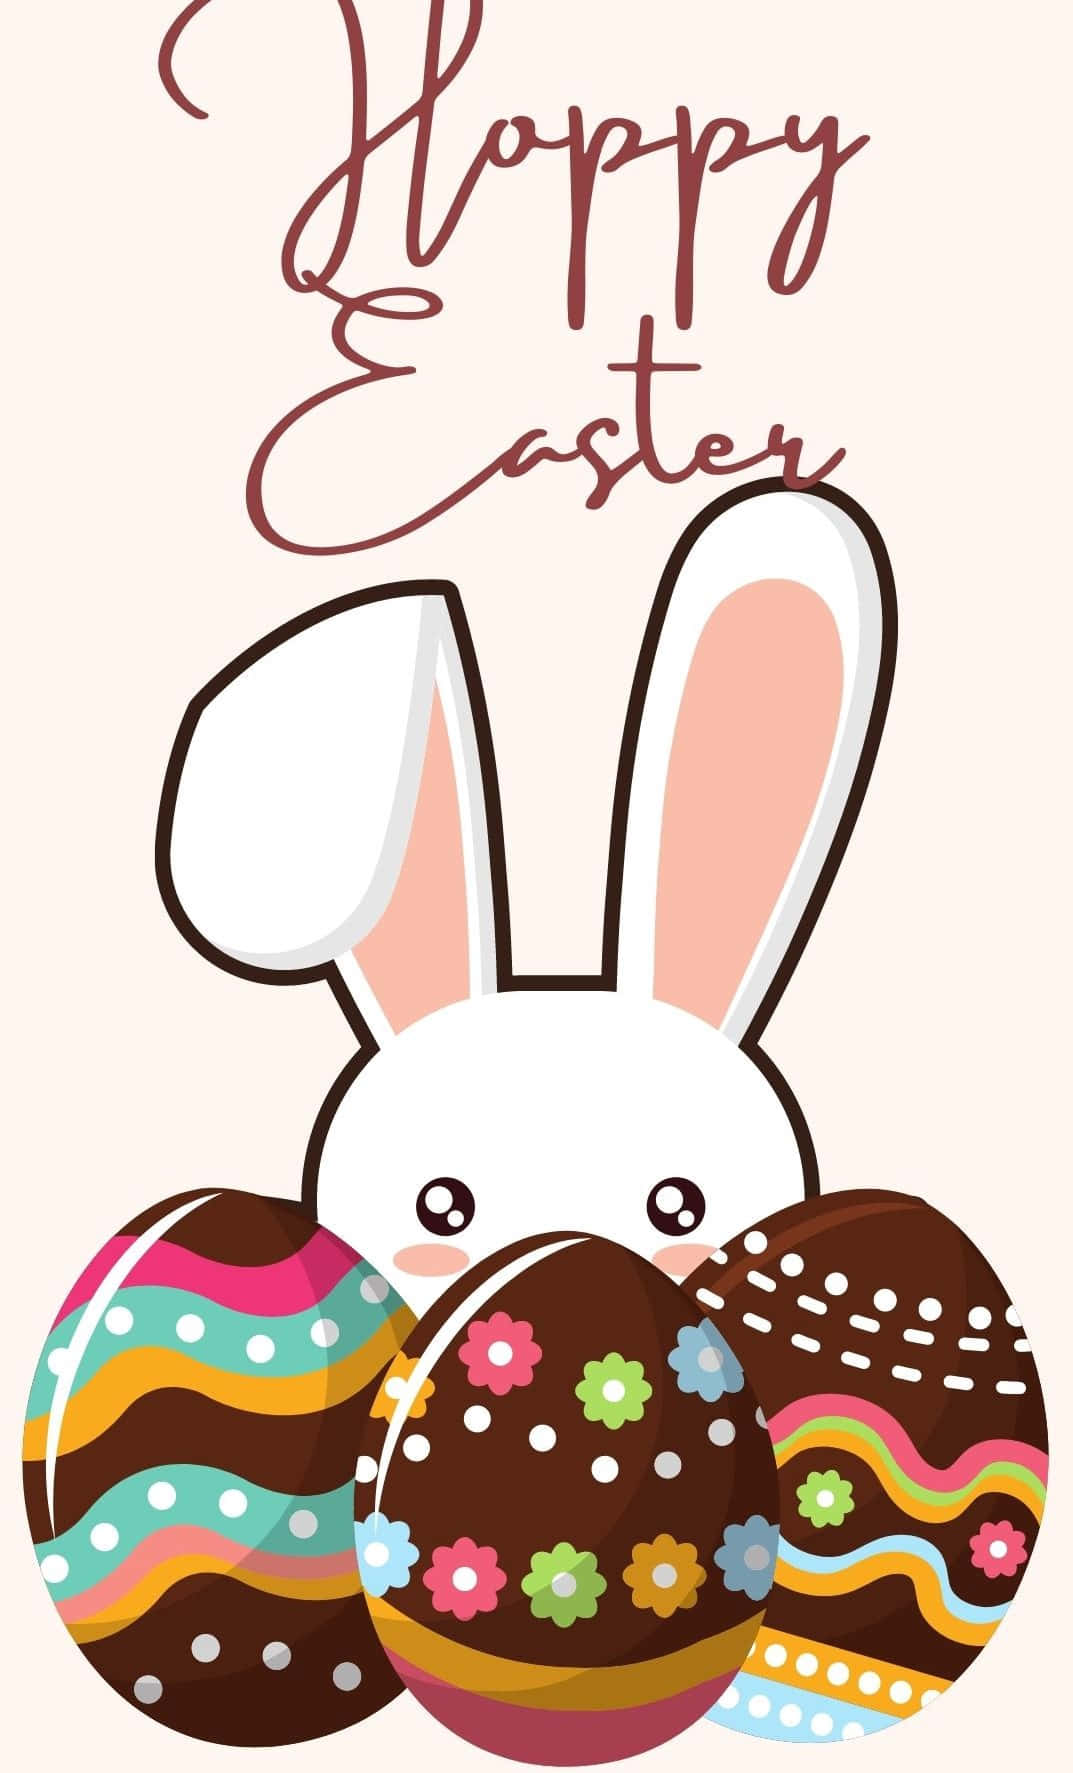 En sød påske-tema iPhone wallpaper, dekoreret med søde påskeæg og kaniner! Wallpaper